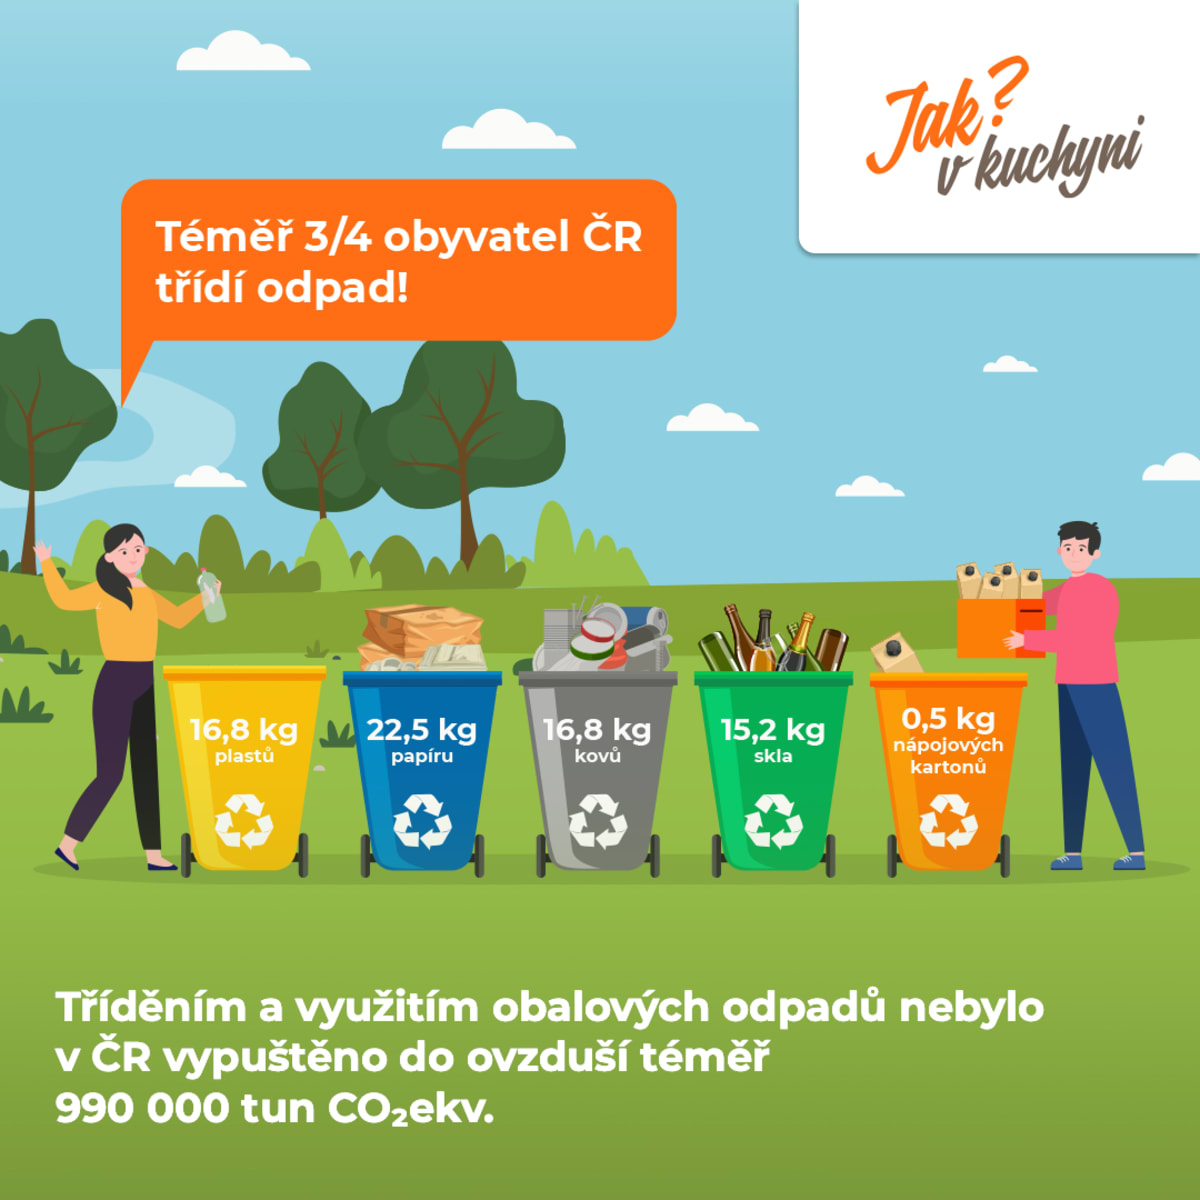 Třídění odpadu má pozitivní dopad na životní prostředí. Jen v loňském roce jsme díky třídění obalových odpadů zachránili v přepočtu 30 km2 přírody 